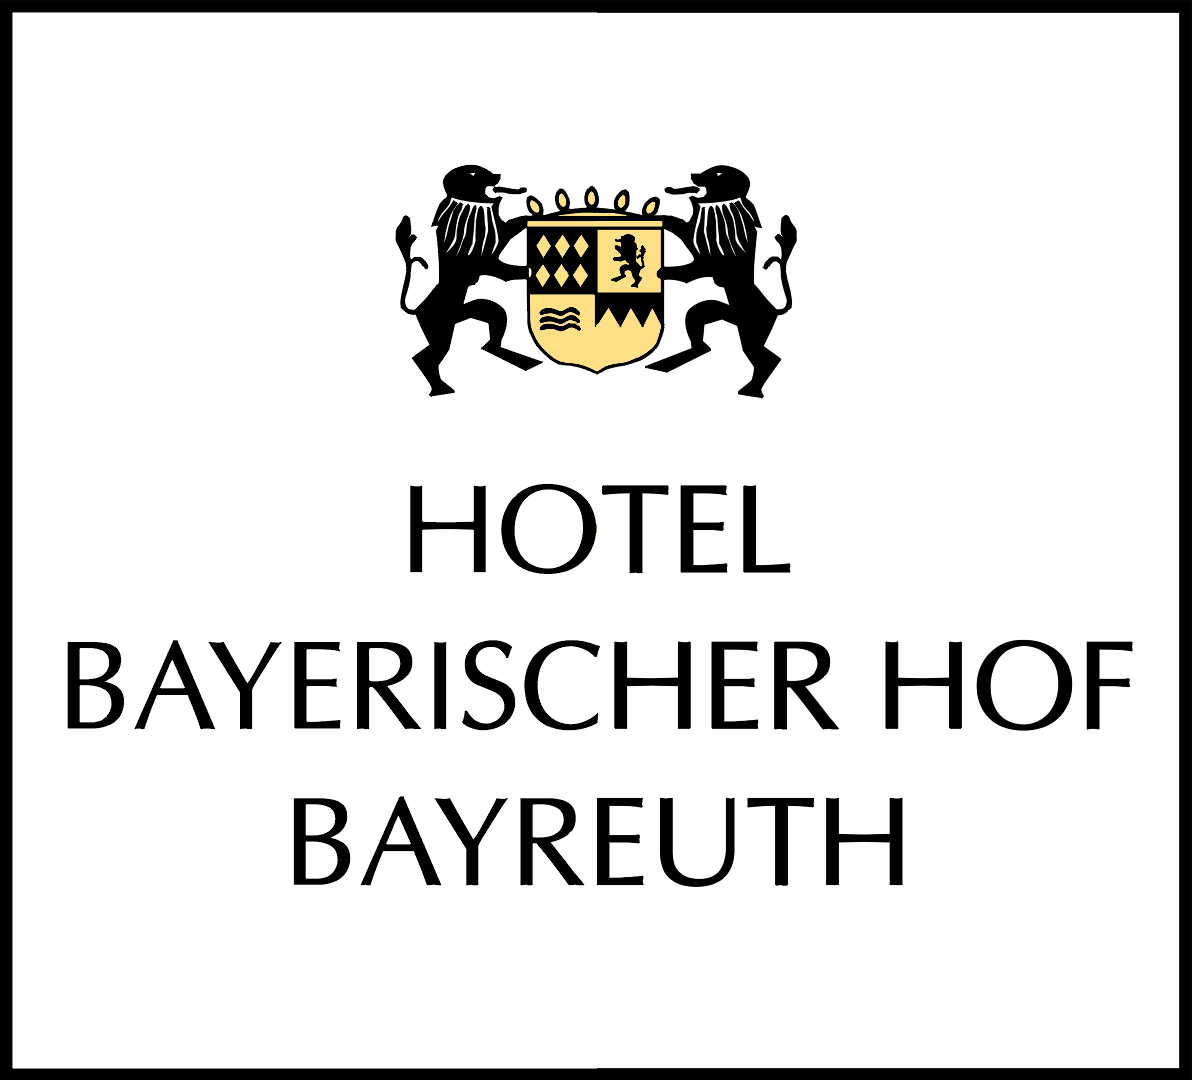 (c) Bayerischer-hof.de